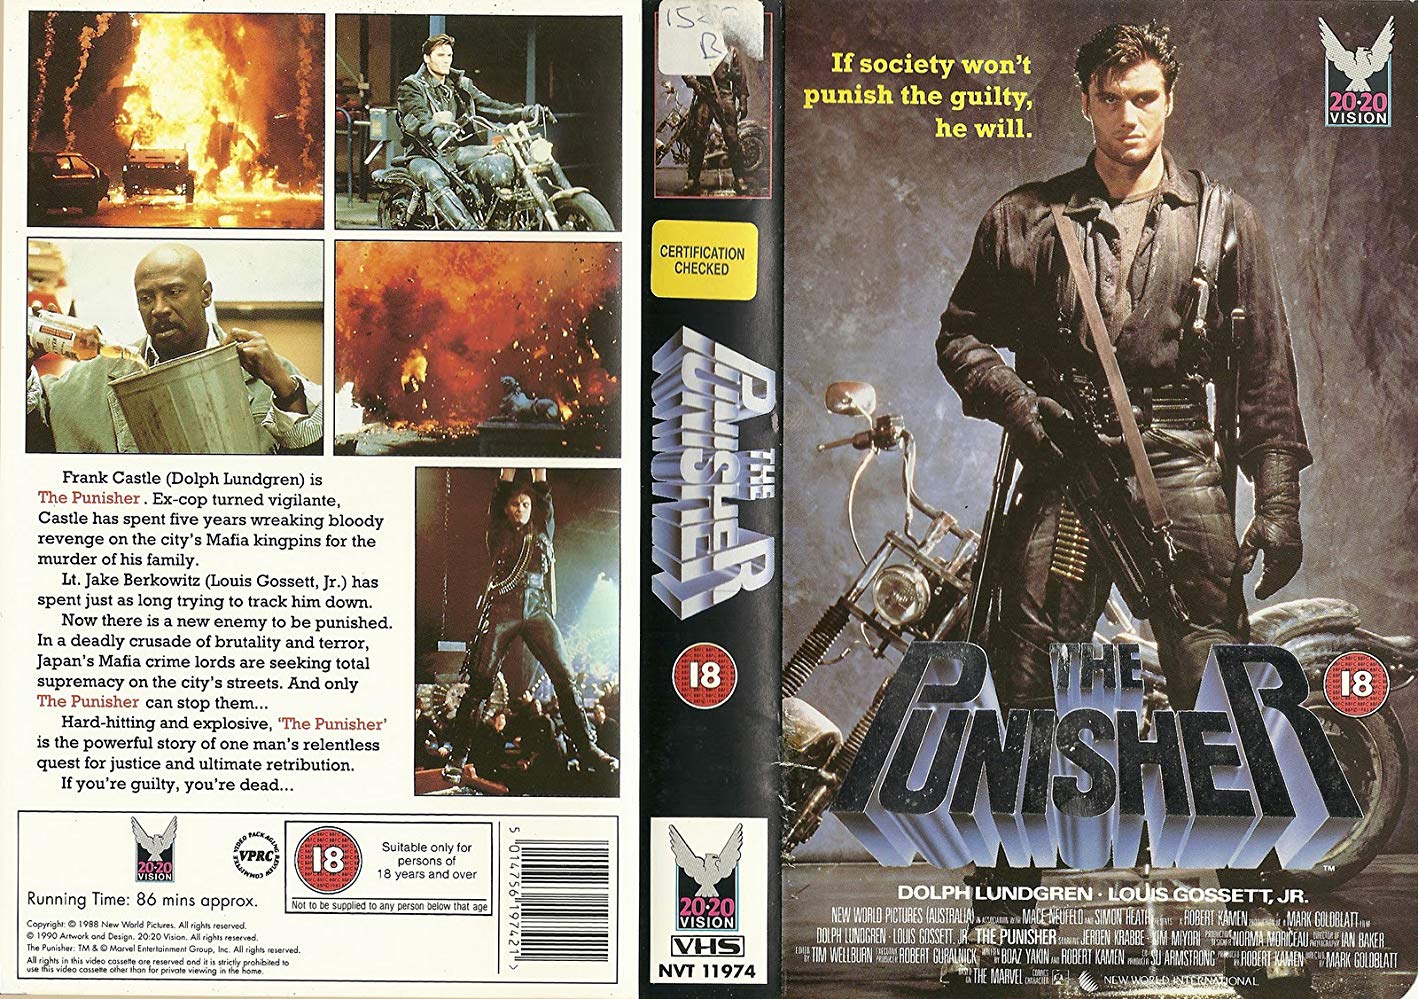 The Punisher (1989) Dolph Lundgren Marvel VHS cassette video tape rental 80s action